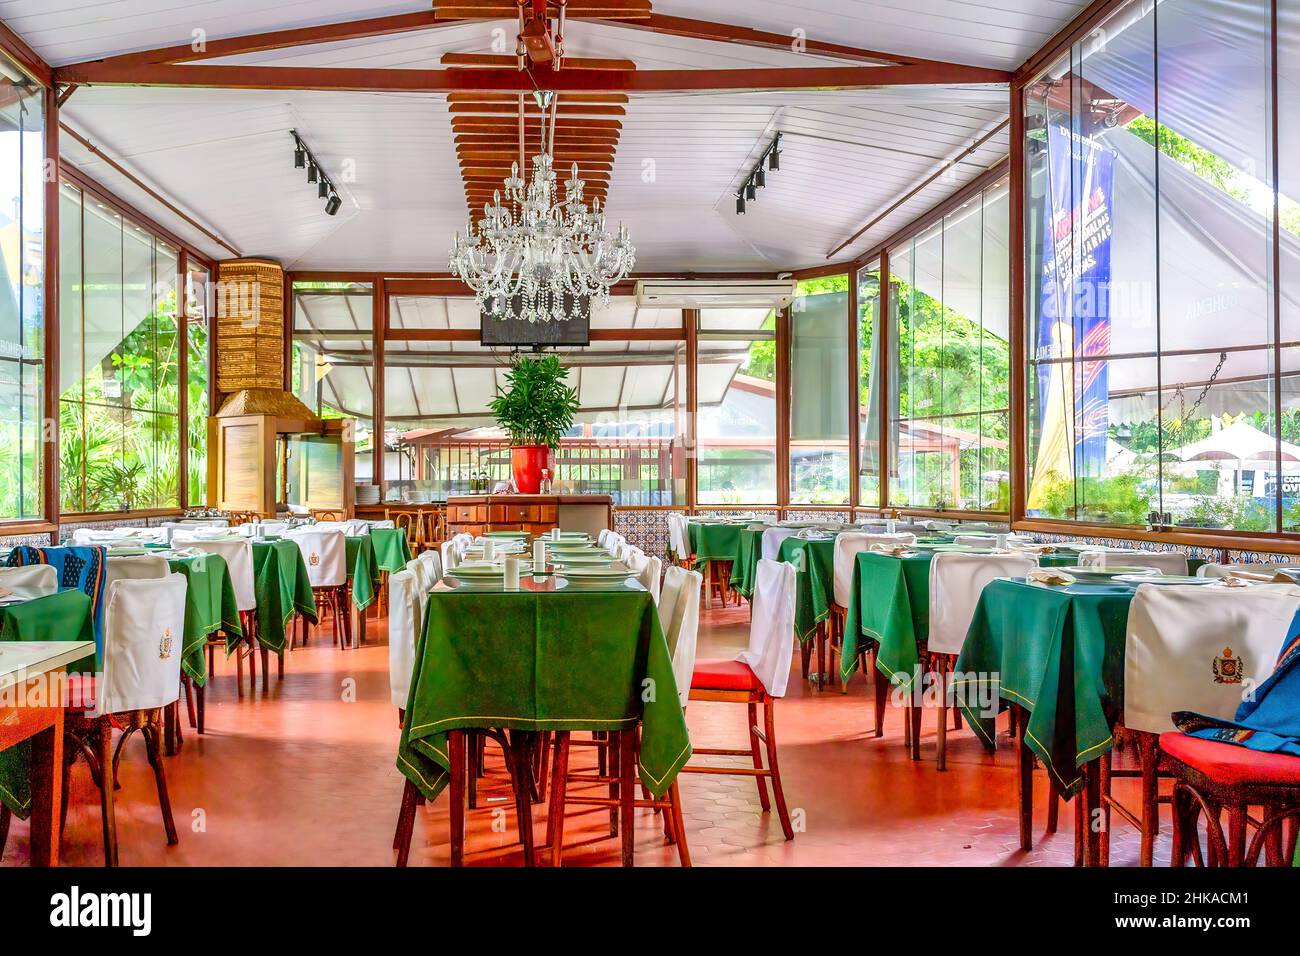 Innenansicht des Restaurants Quinta da Boa Vista. Der berühmte öffentliche Park, der sich auf dem ehemaligen kaiserlichen Gelände befindet, ist eine der wichtigsten Touristenattraktionen der Stadt Stockfoto